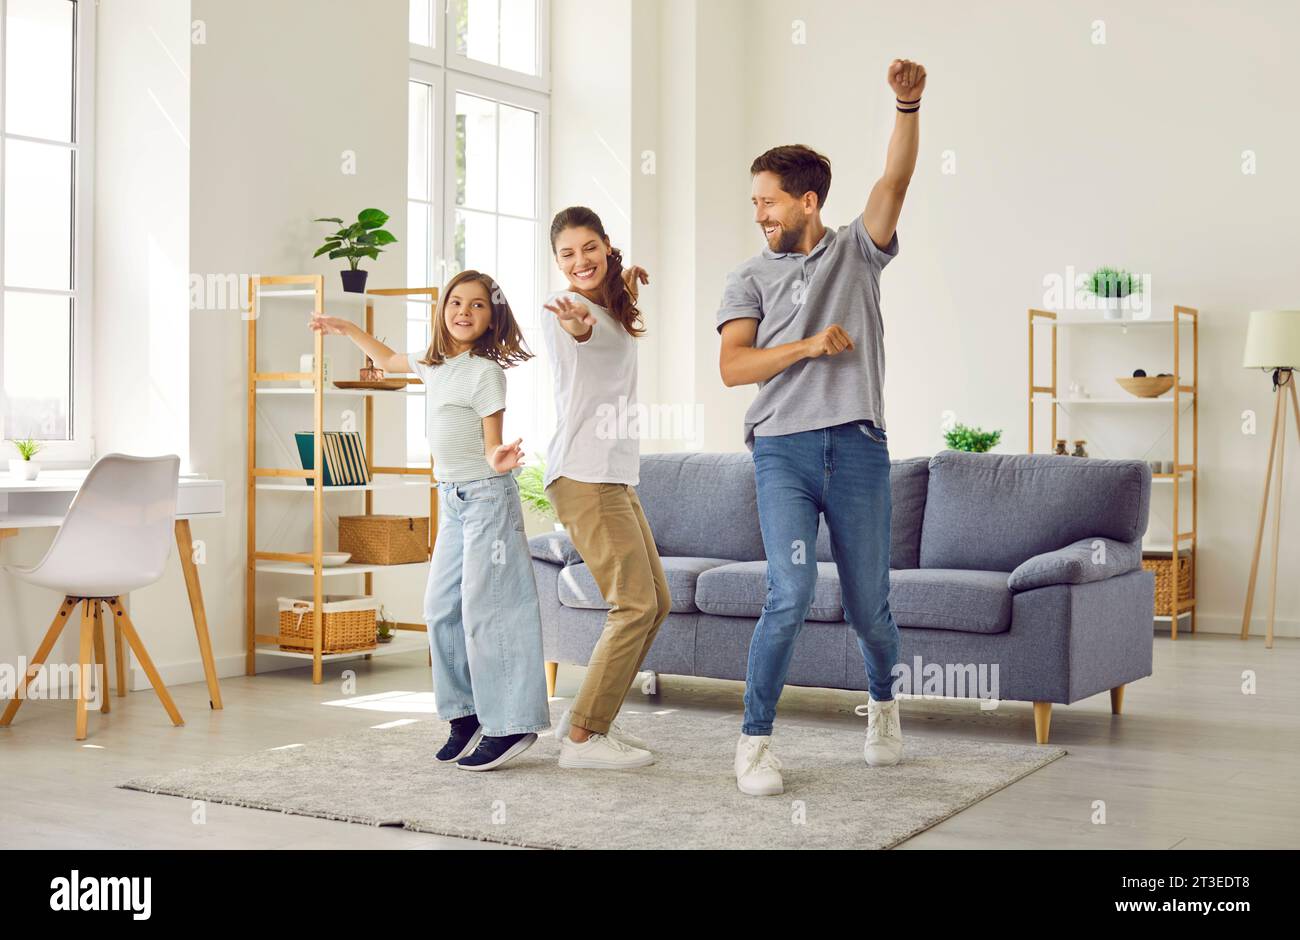 Glückliche, fröhliche Mutter, Vater und Tochter, die eine Party feiern und im Wohnzimmer tanzen Stockfoto